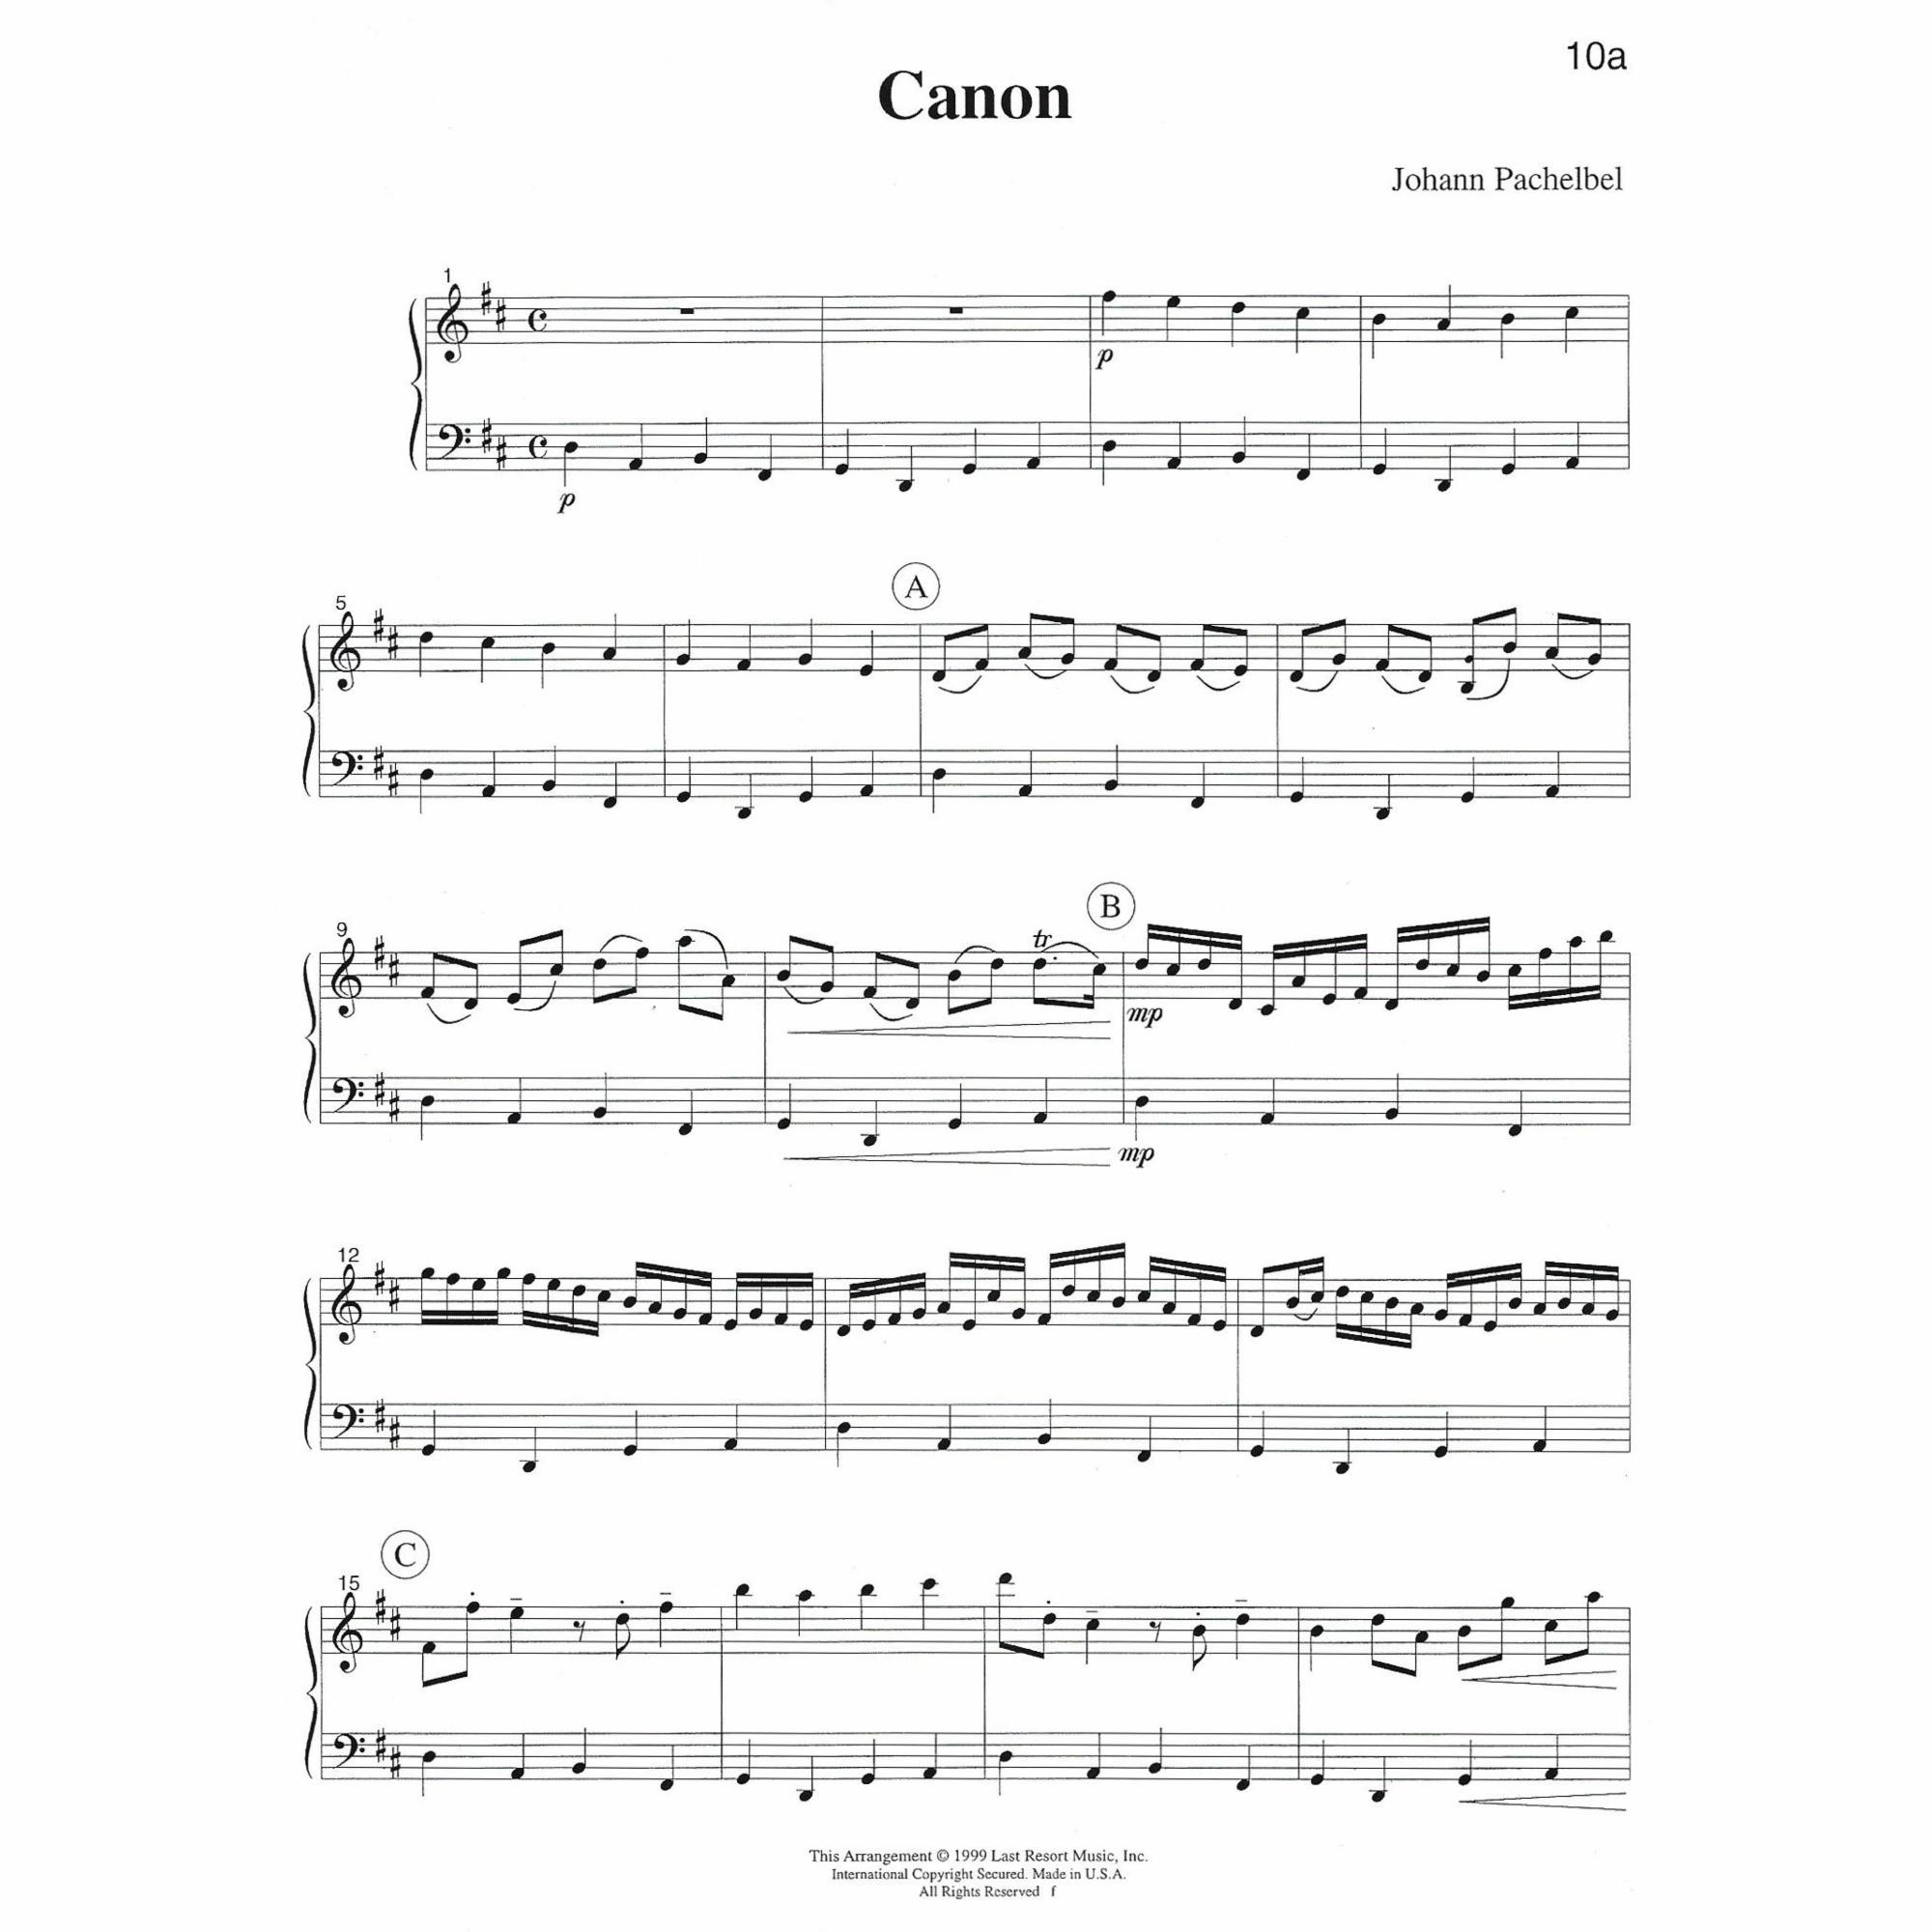 Sample: Violin and Cello (Pg. 10a)